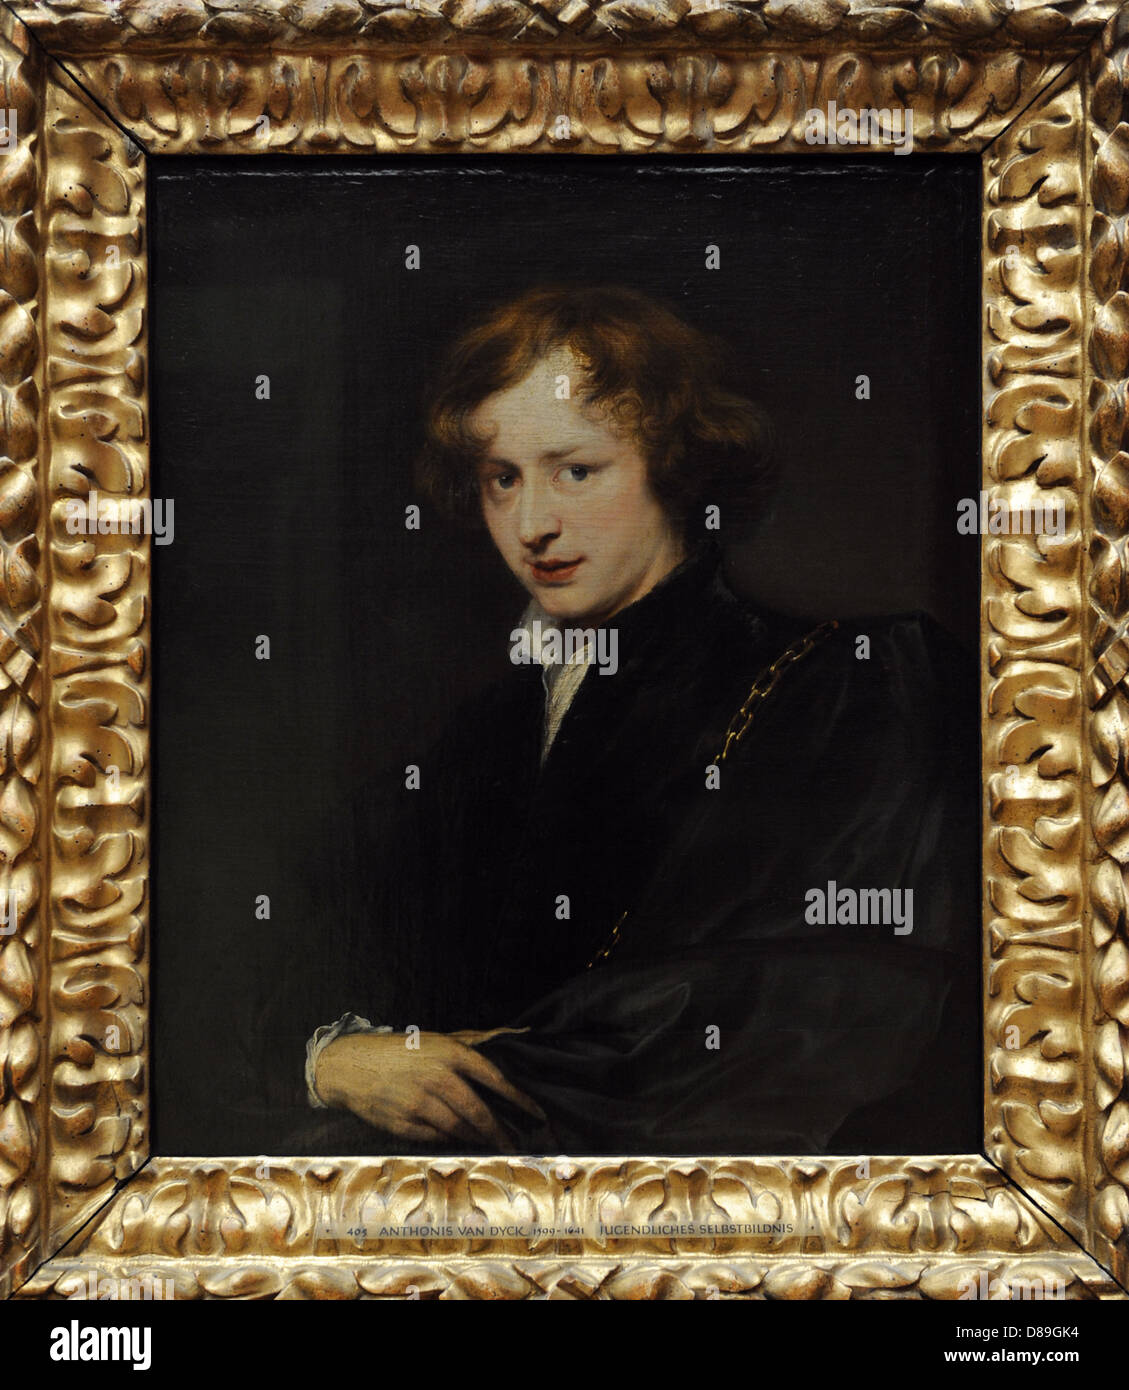 Anthony Van Dyck (1599-1641). È stata una Fiamminga artista barocco. Ritratto di auto, ca 1621. Olio su tela. Alte Pinakothek. Monaco di Baviera. Foto Stock